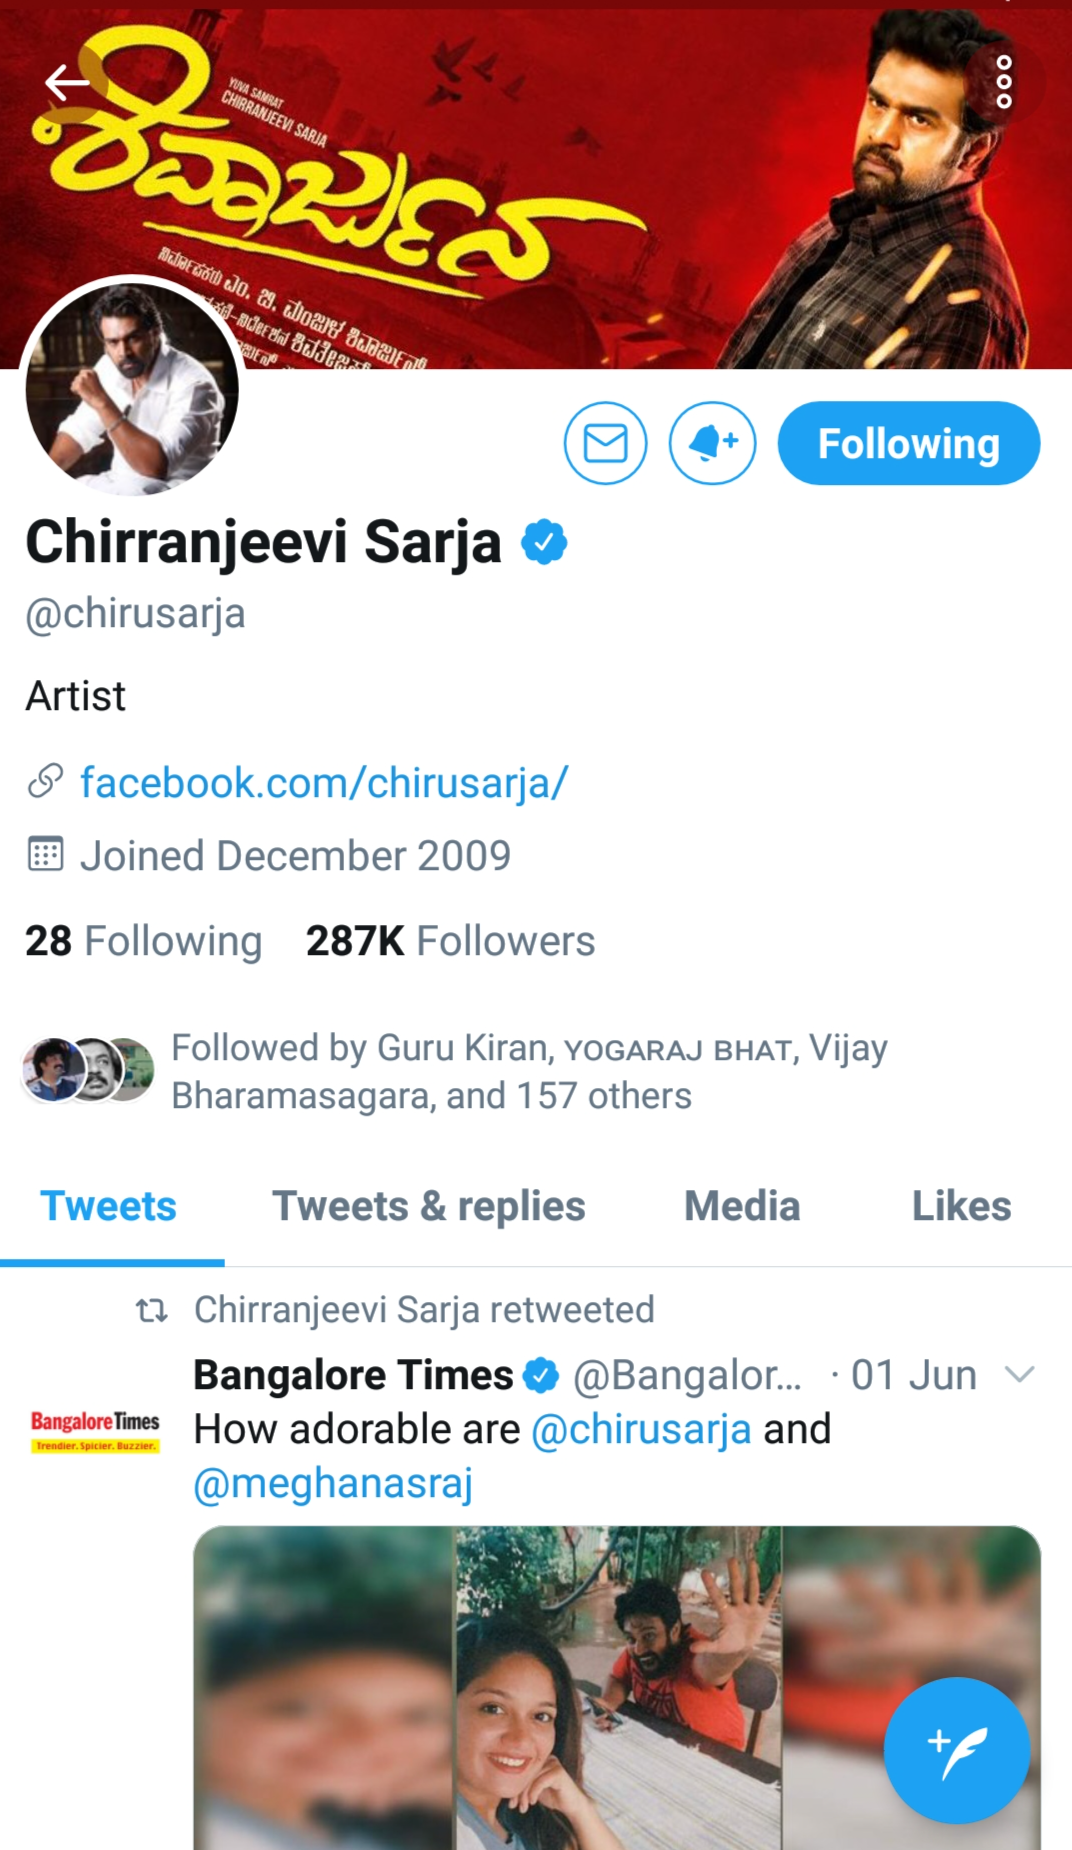 Chiranjeevi Sarja Twitter account